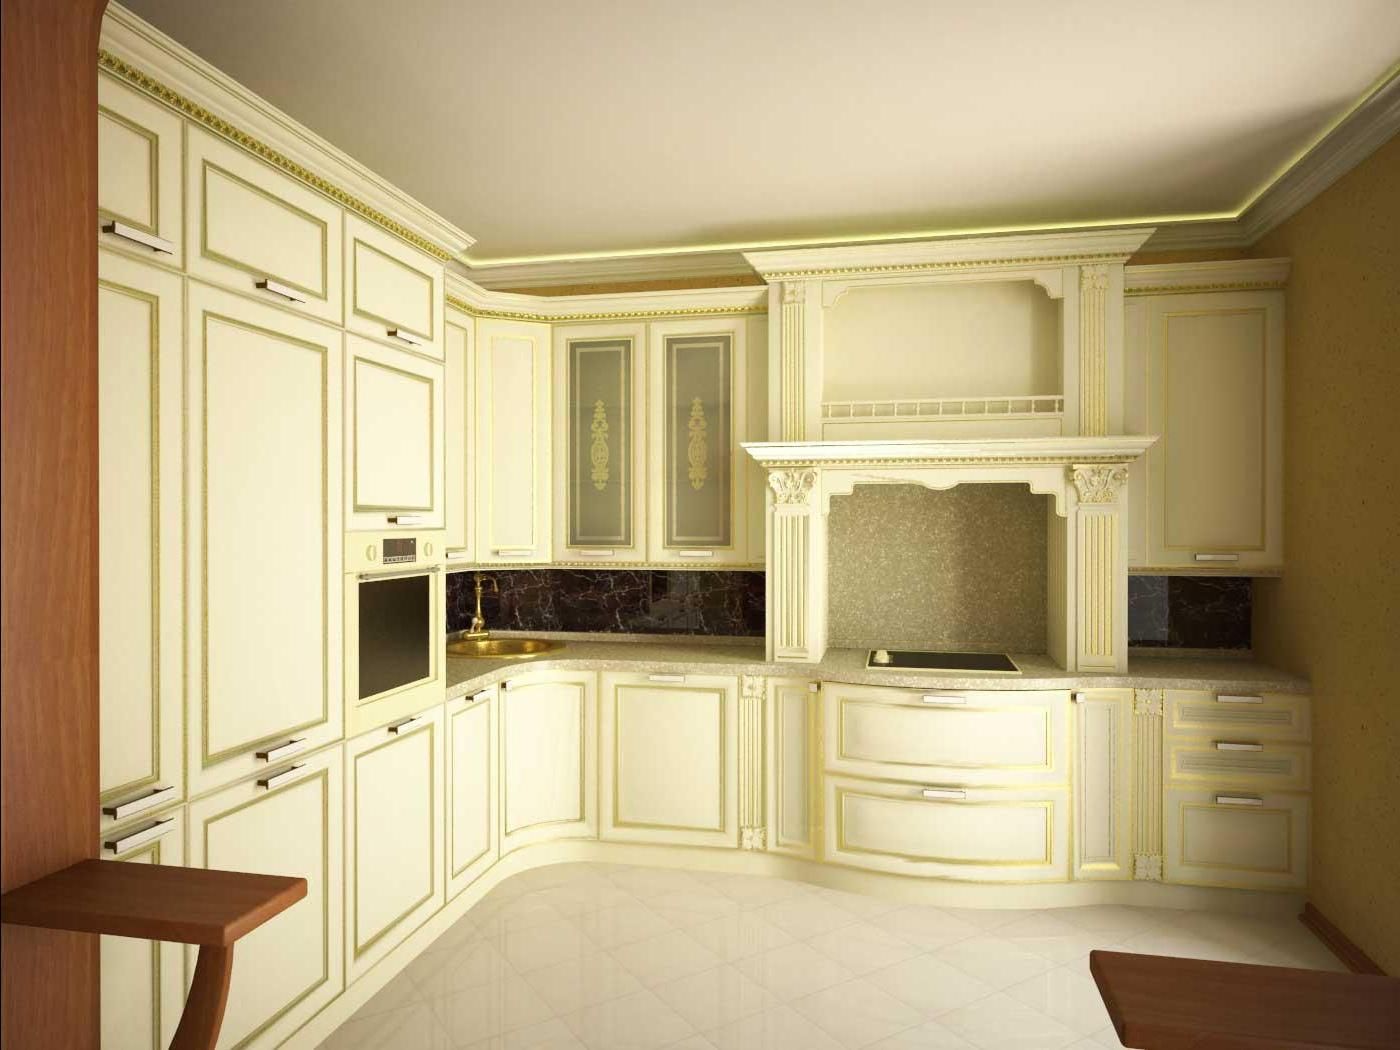 Кухня Федот угловая классического стиля белого цвета с декоративными элементами